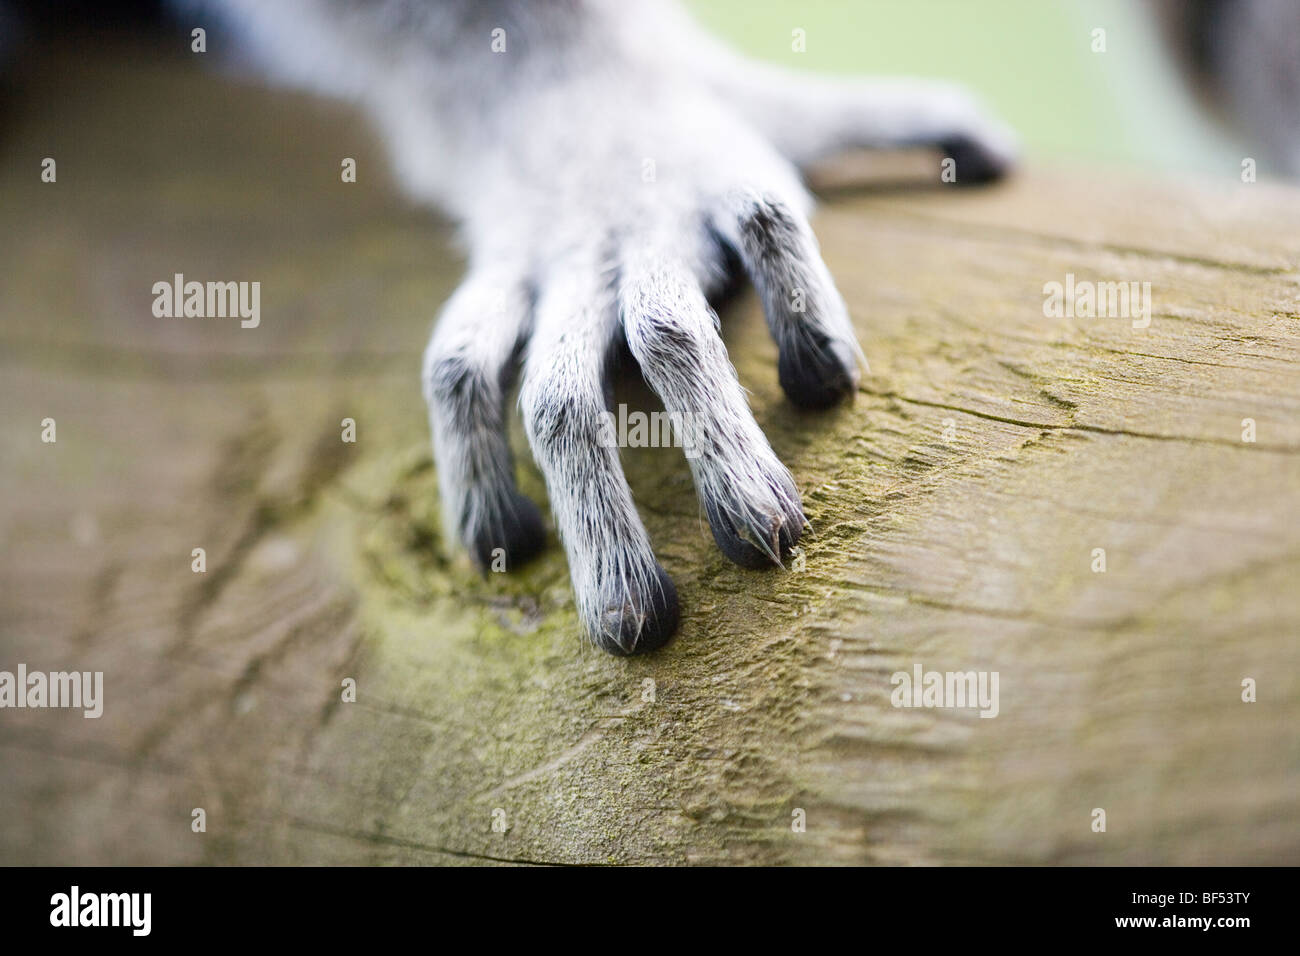 Ring-tailed Lemur (Lemur catta). Rechts vorn - Extremität mit fünf Ziffern. Pentadactyl Extremität. Stockfoto